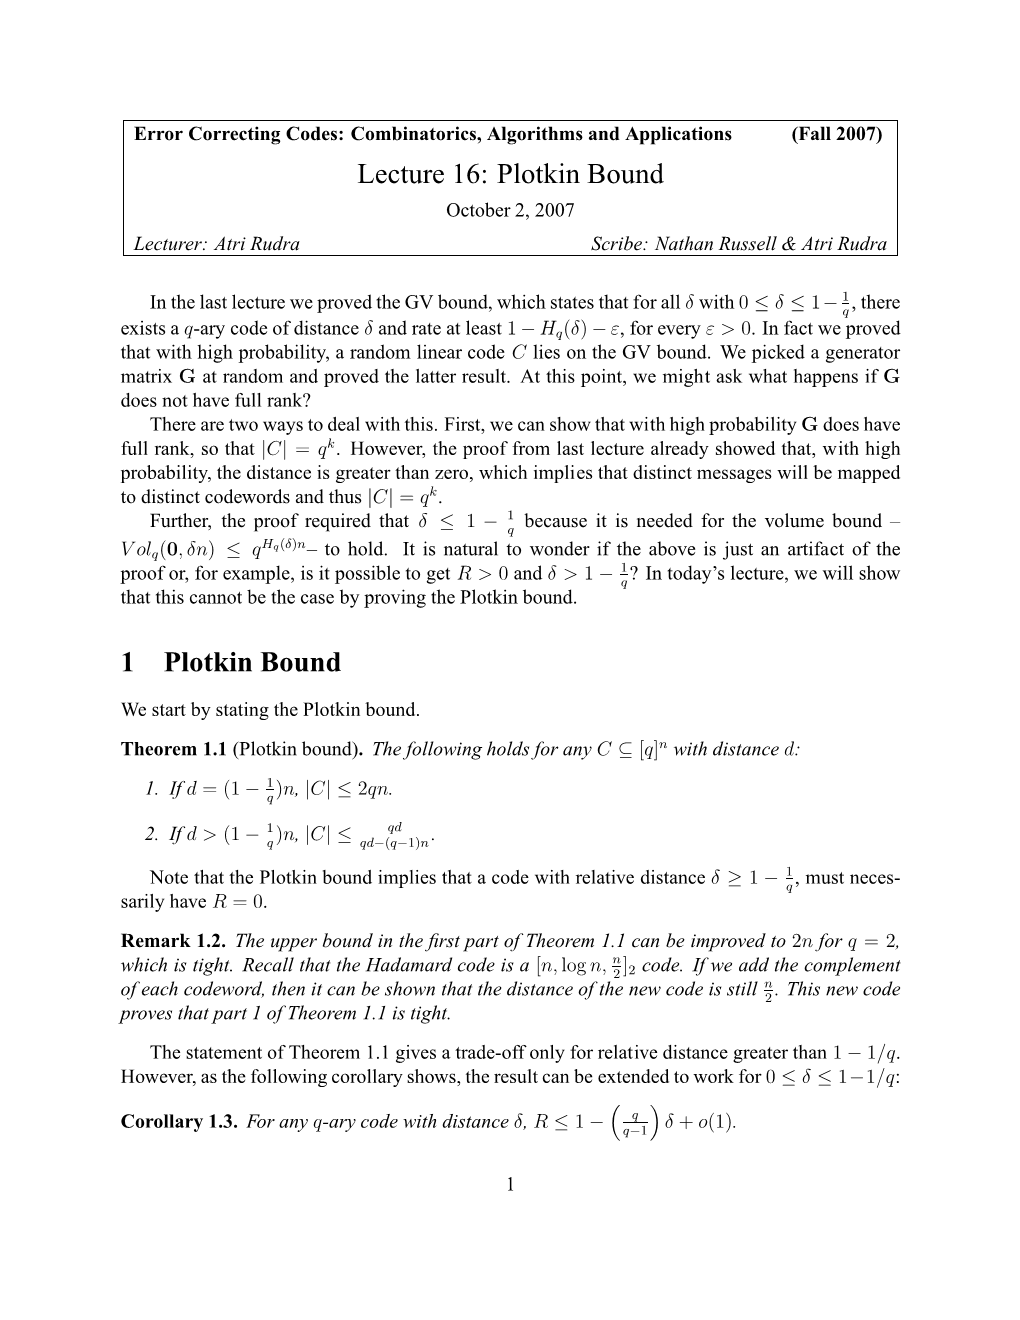 Lecture 16: Plotkin Bound 1 Plotkin Bound